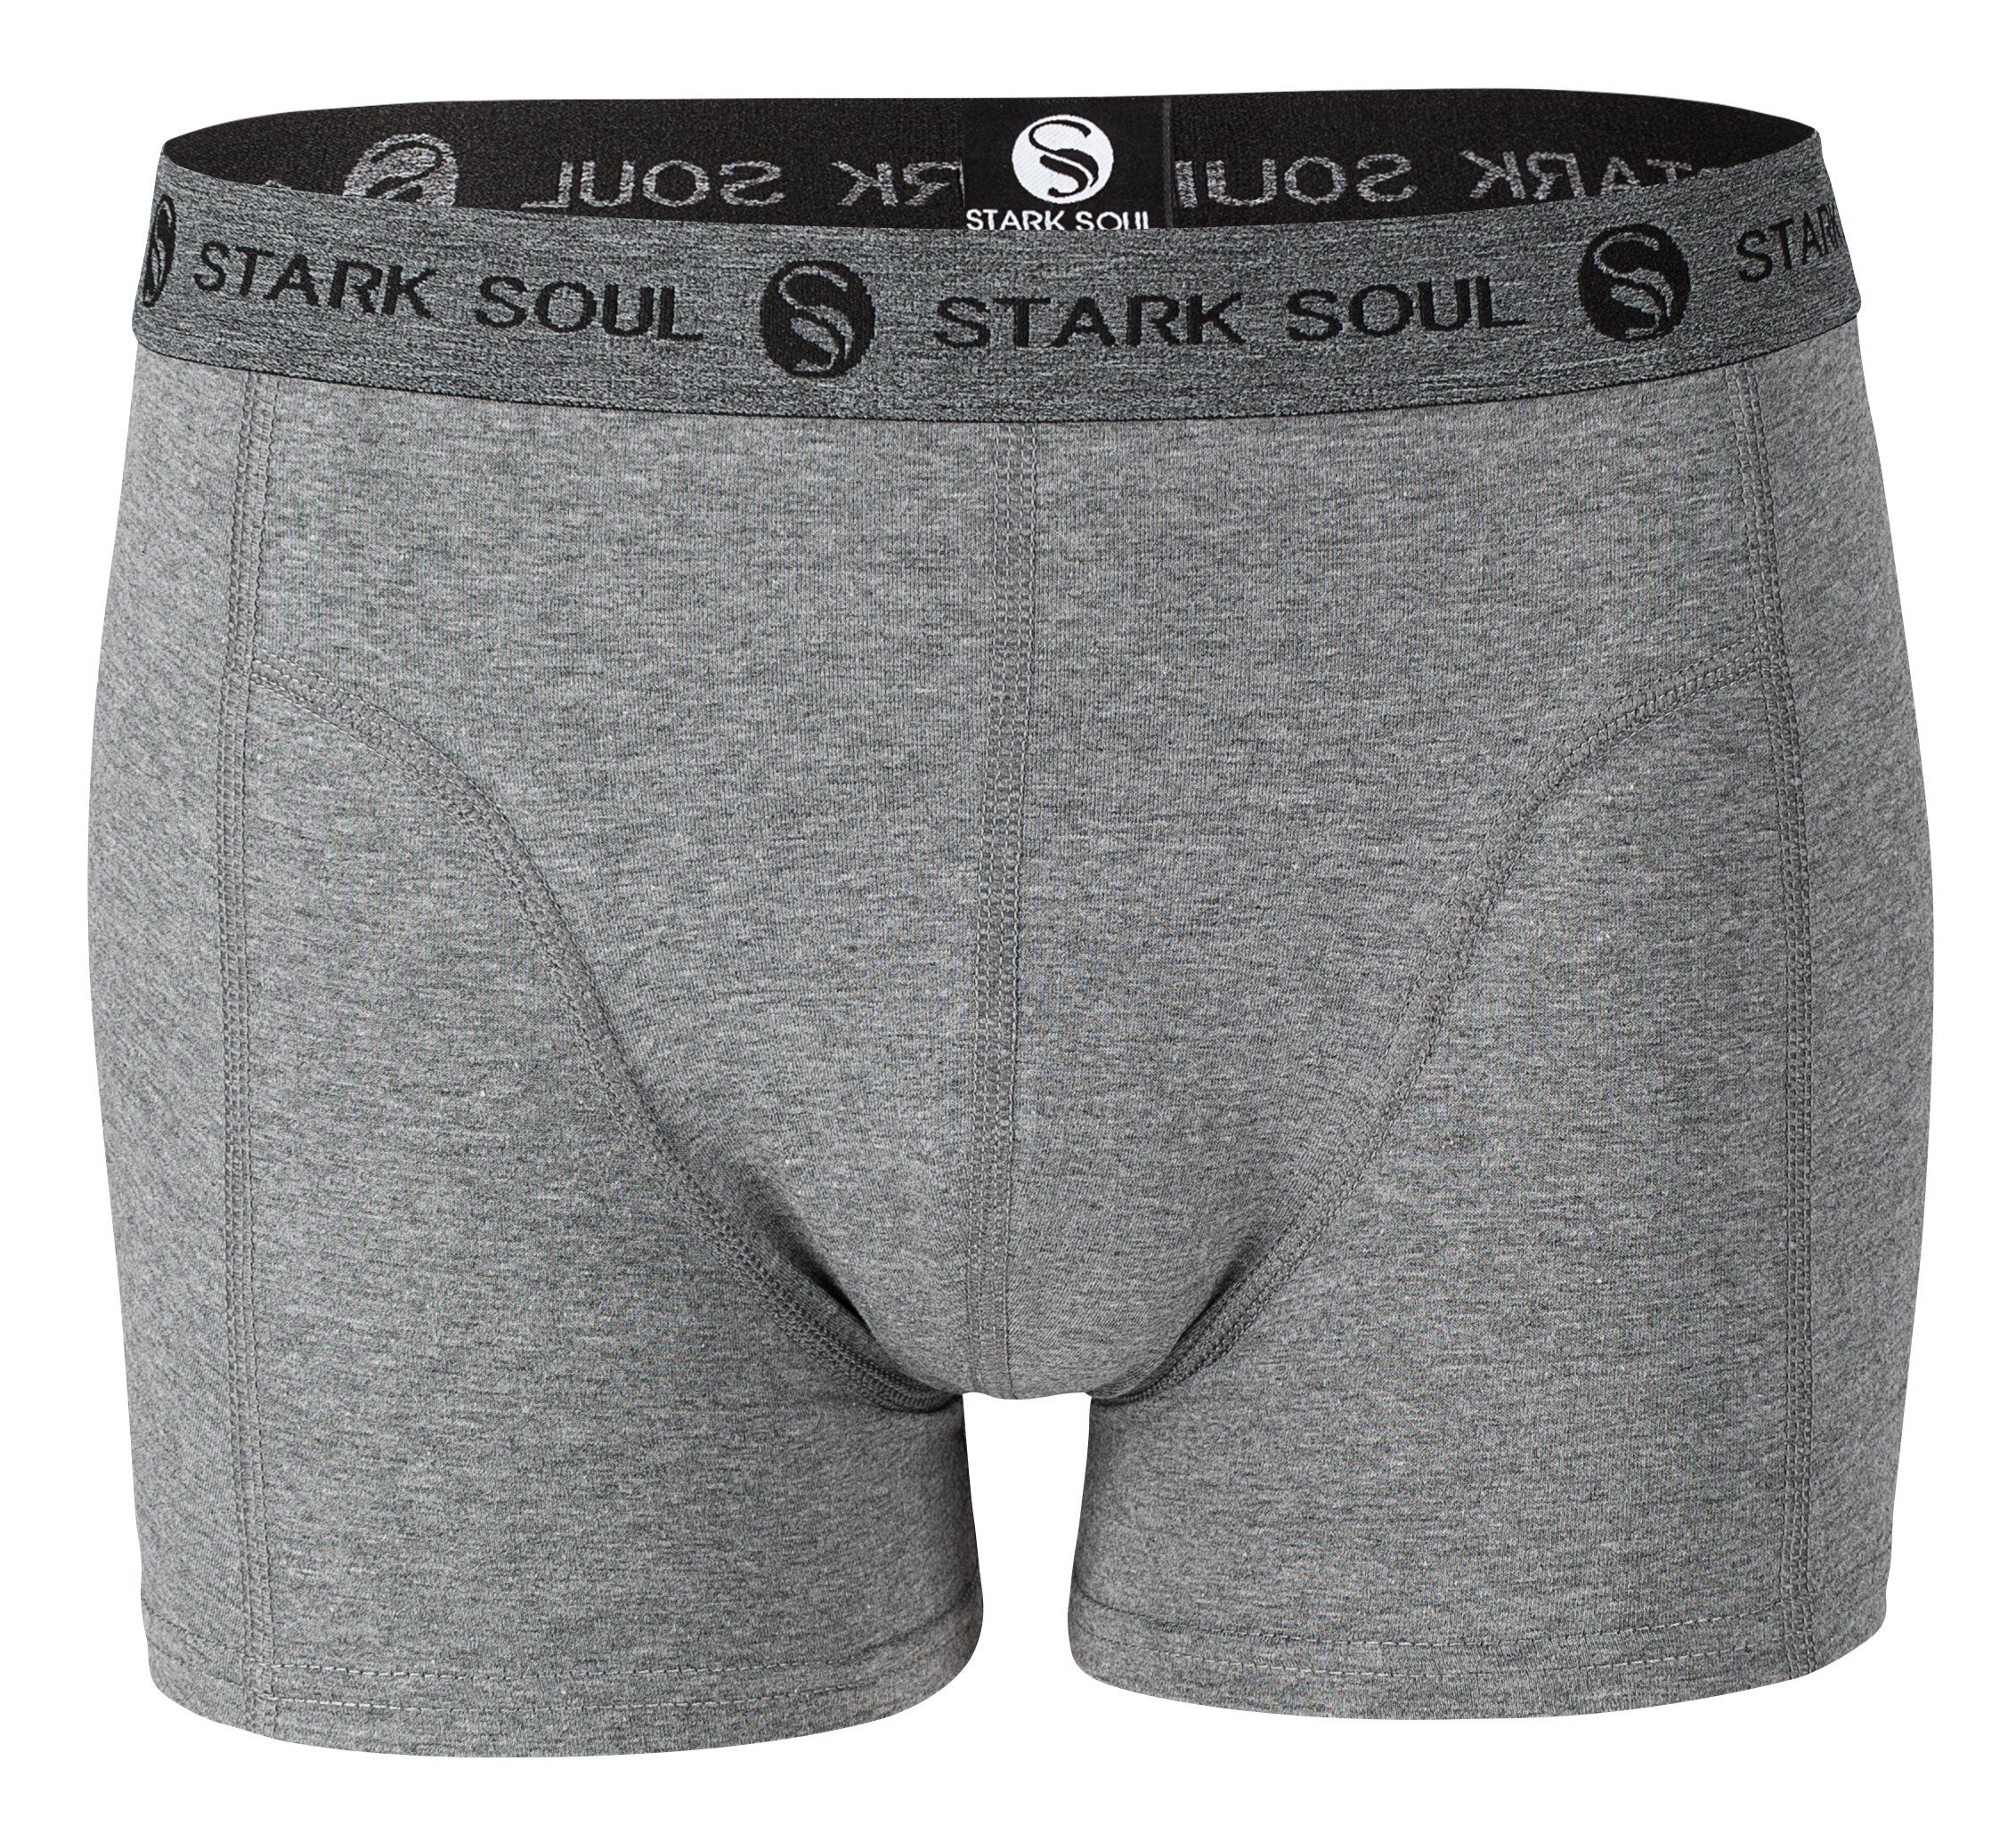 Stark Soul® Boxershorts Herren Boxershorts, 3er-Pack Retroshorts, Pack, 3er - Gemischt weiche Trunks Baumwolle